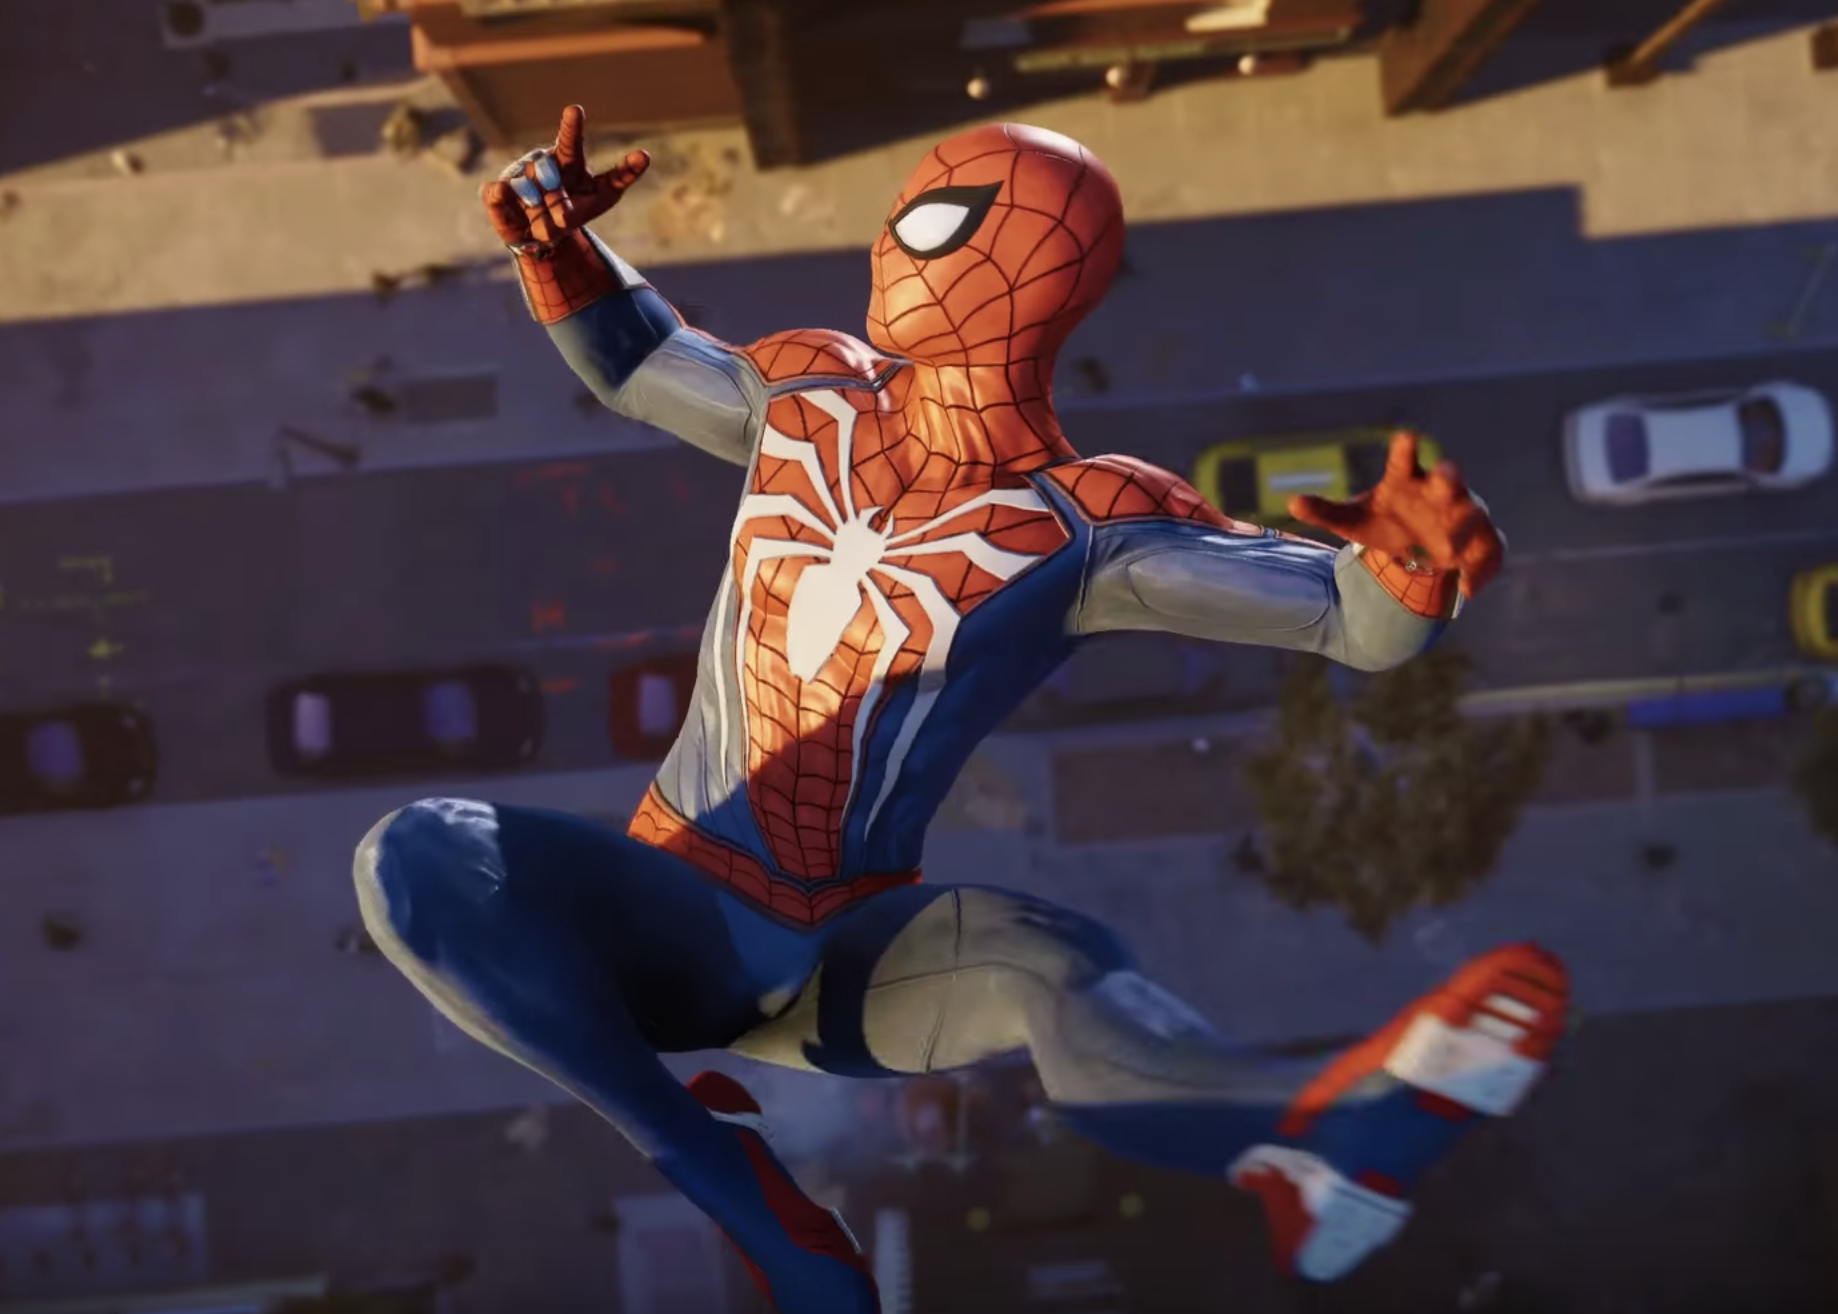 Spider man ps4. Человек паук игра на пс4. Marvel человек-паук (ps4). Spider man 2018 ps4.